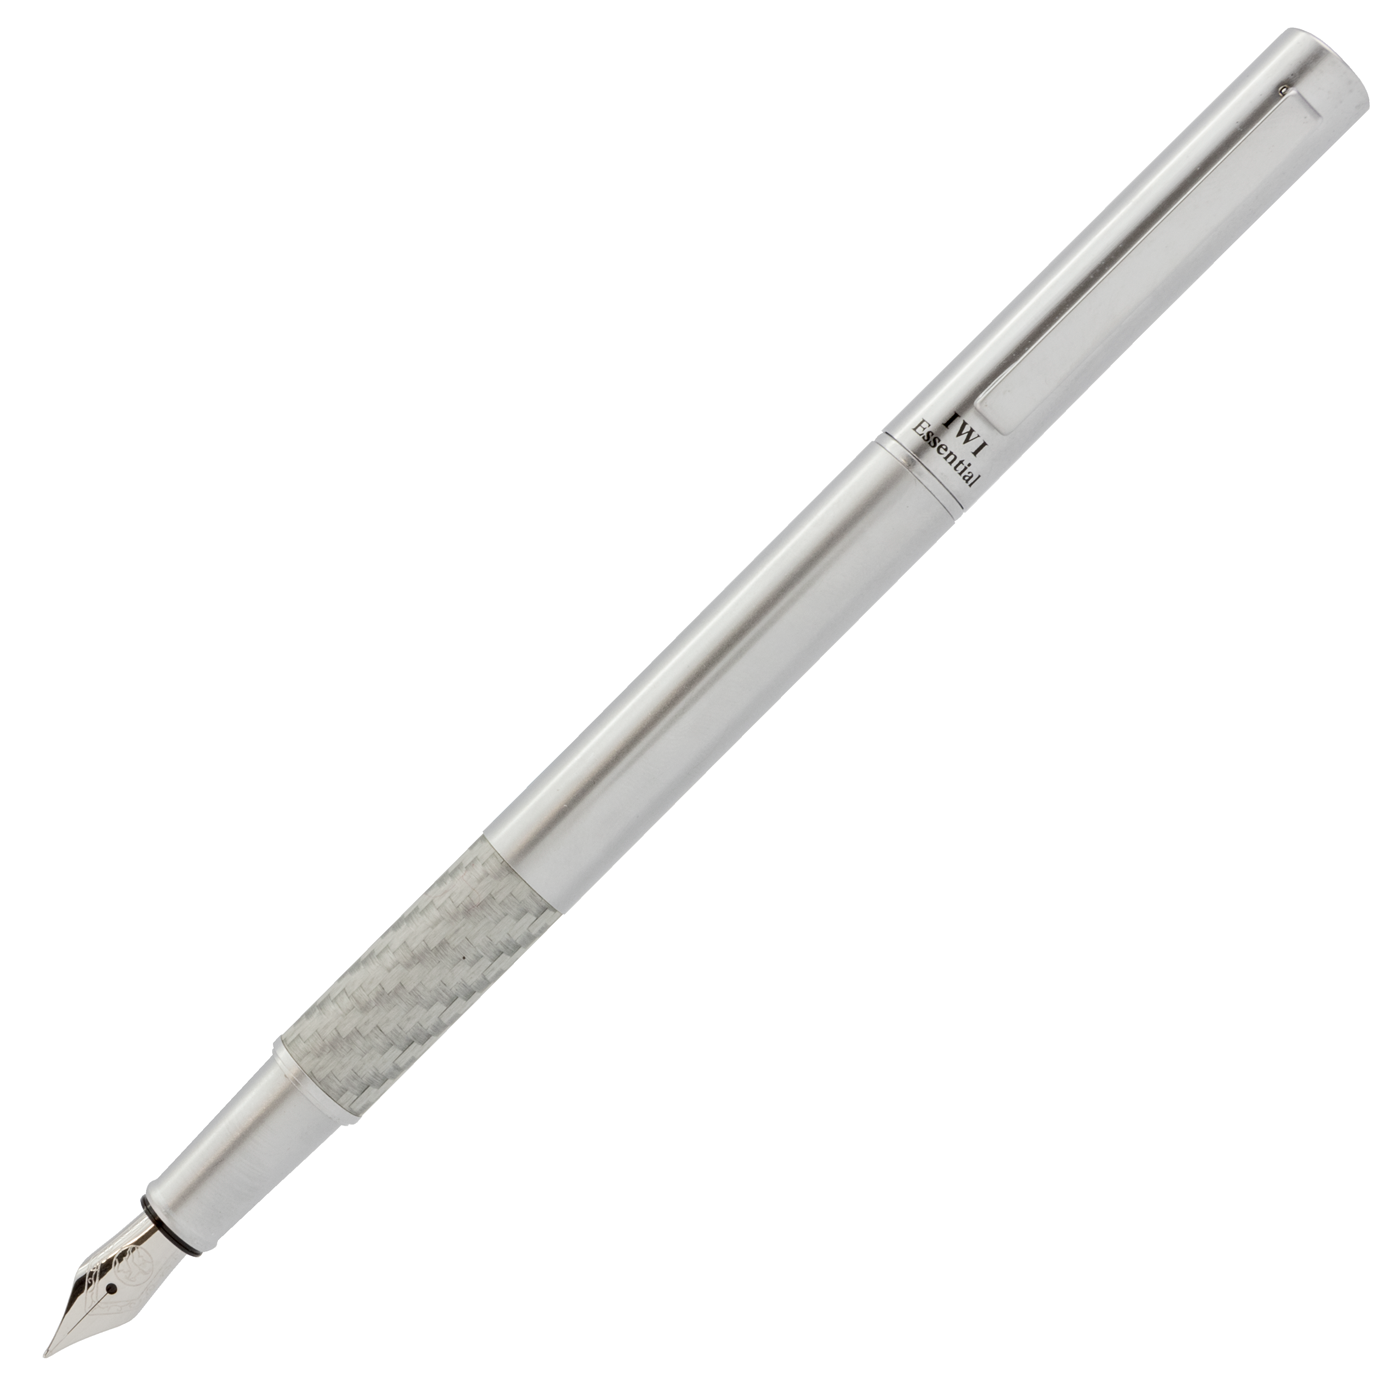 IWI Essential Fountain Pen Silver Fiber